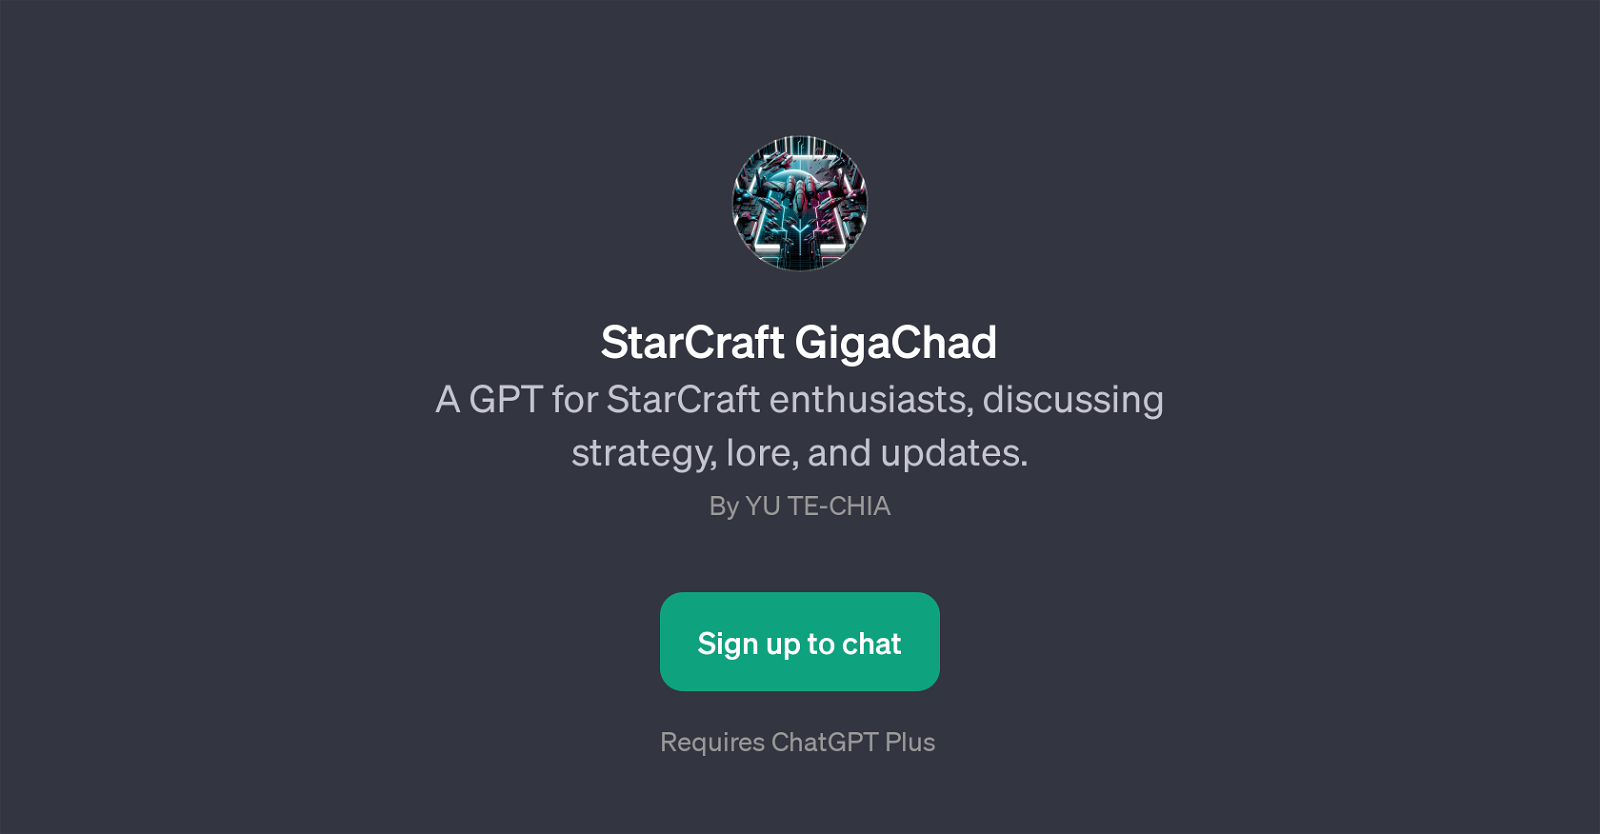 StarCraft GigaChad website